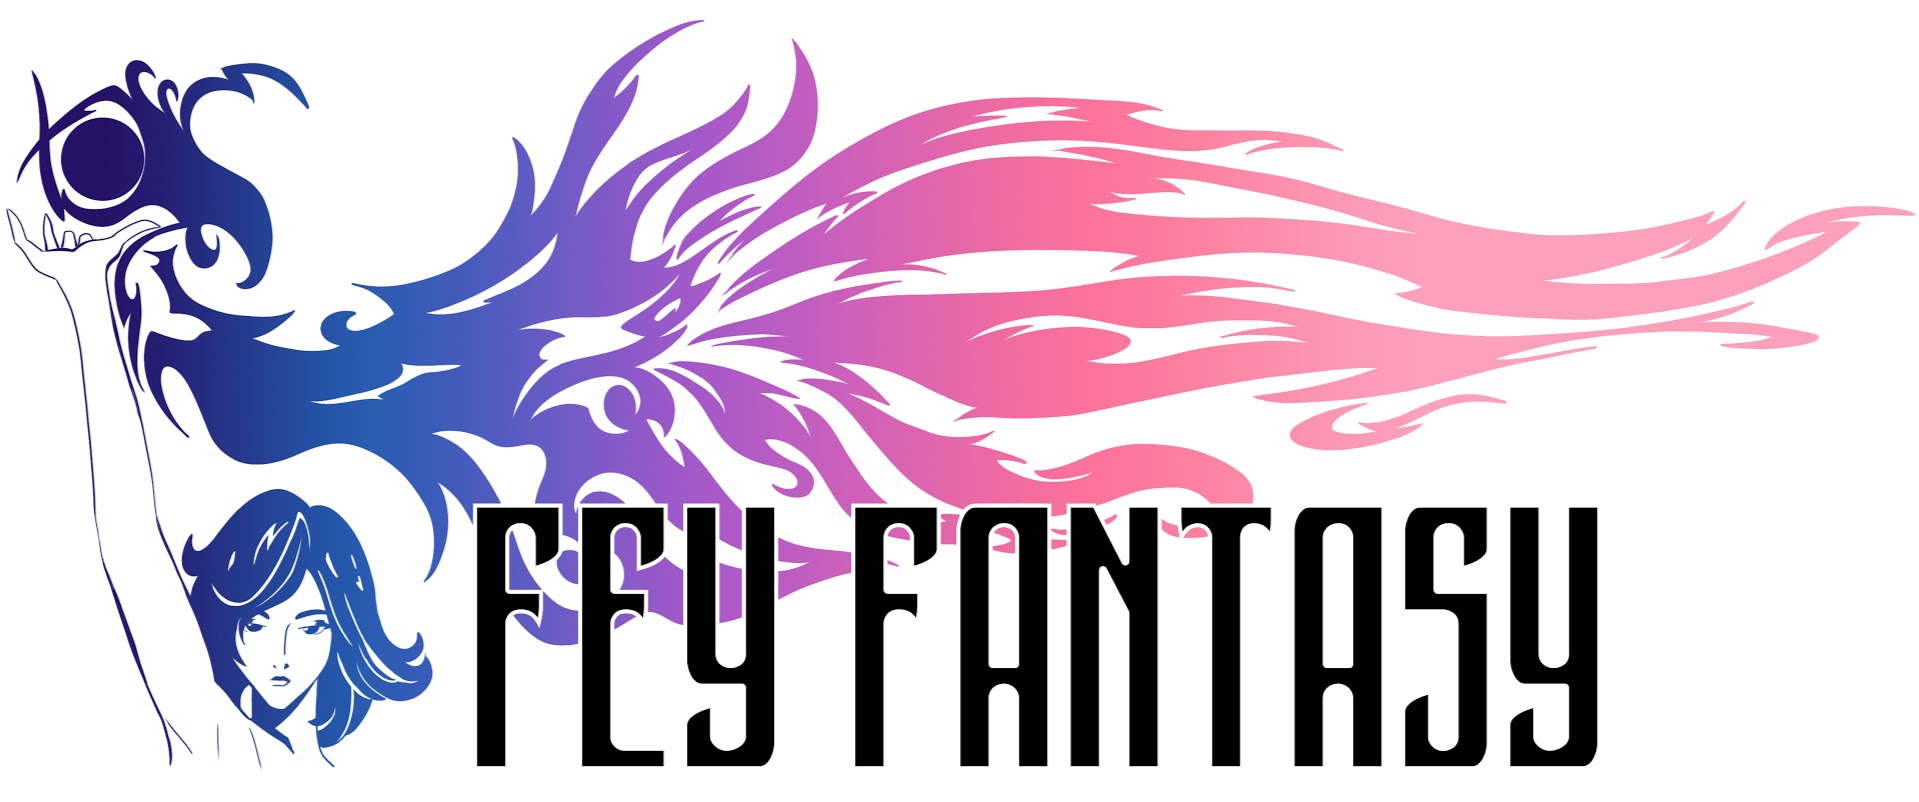 Fey Fantasy Logo 03.jpg